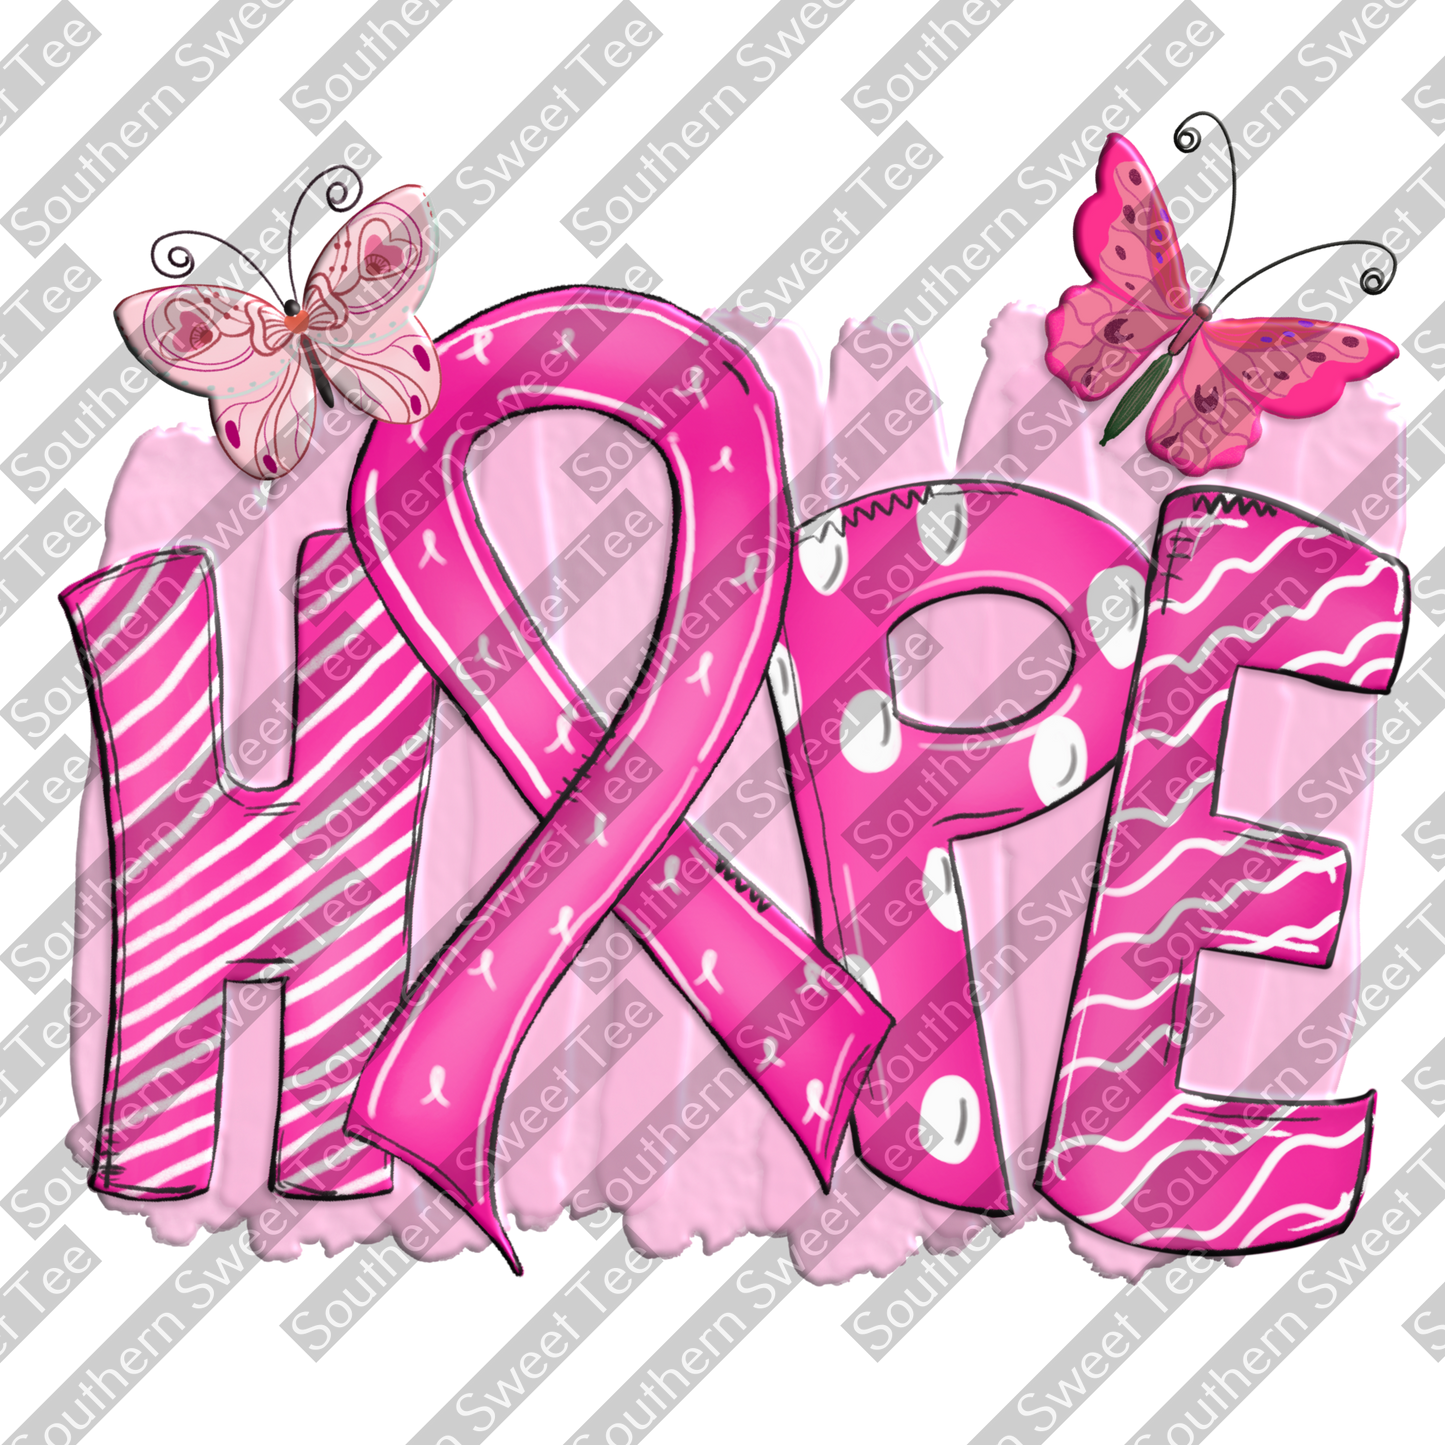 breast cancer hope .bnb